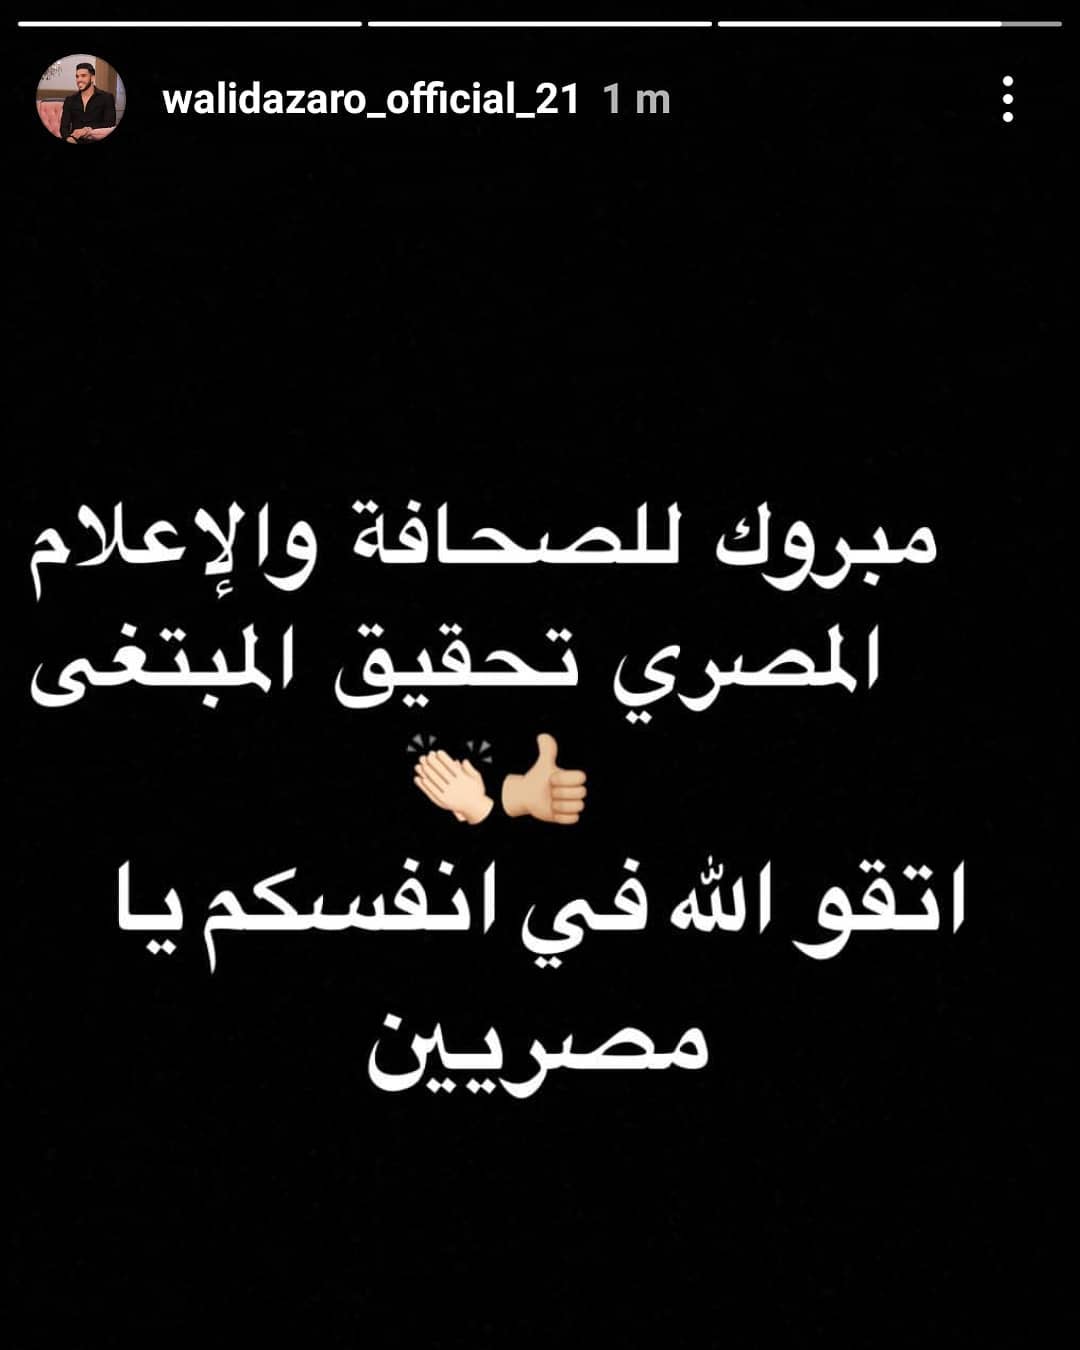 Walid Azaroo on Instagram